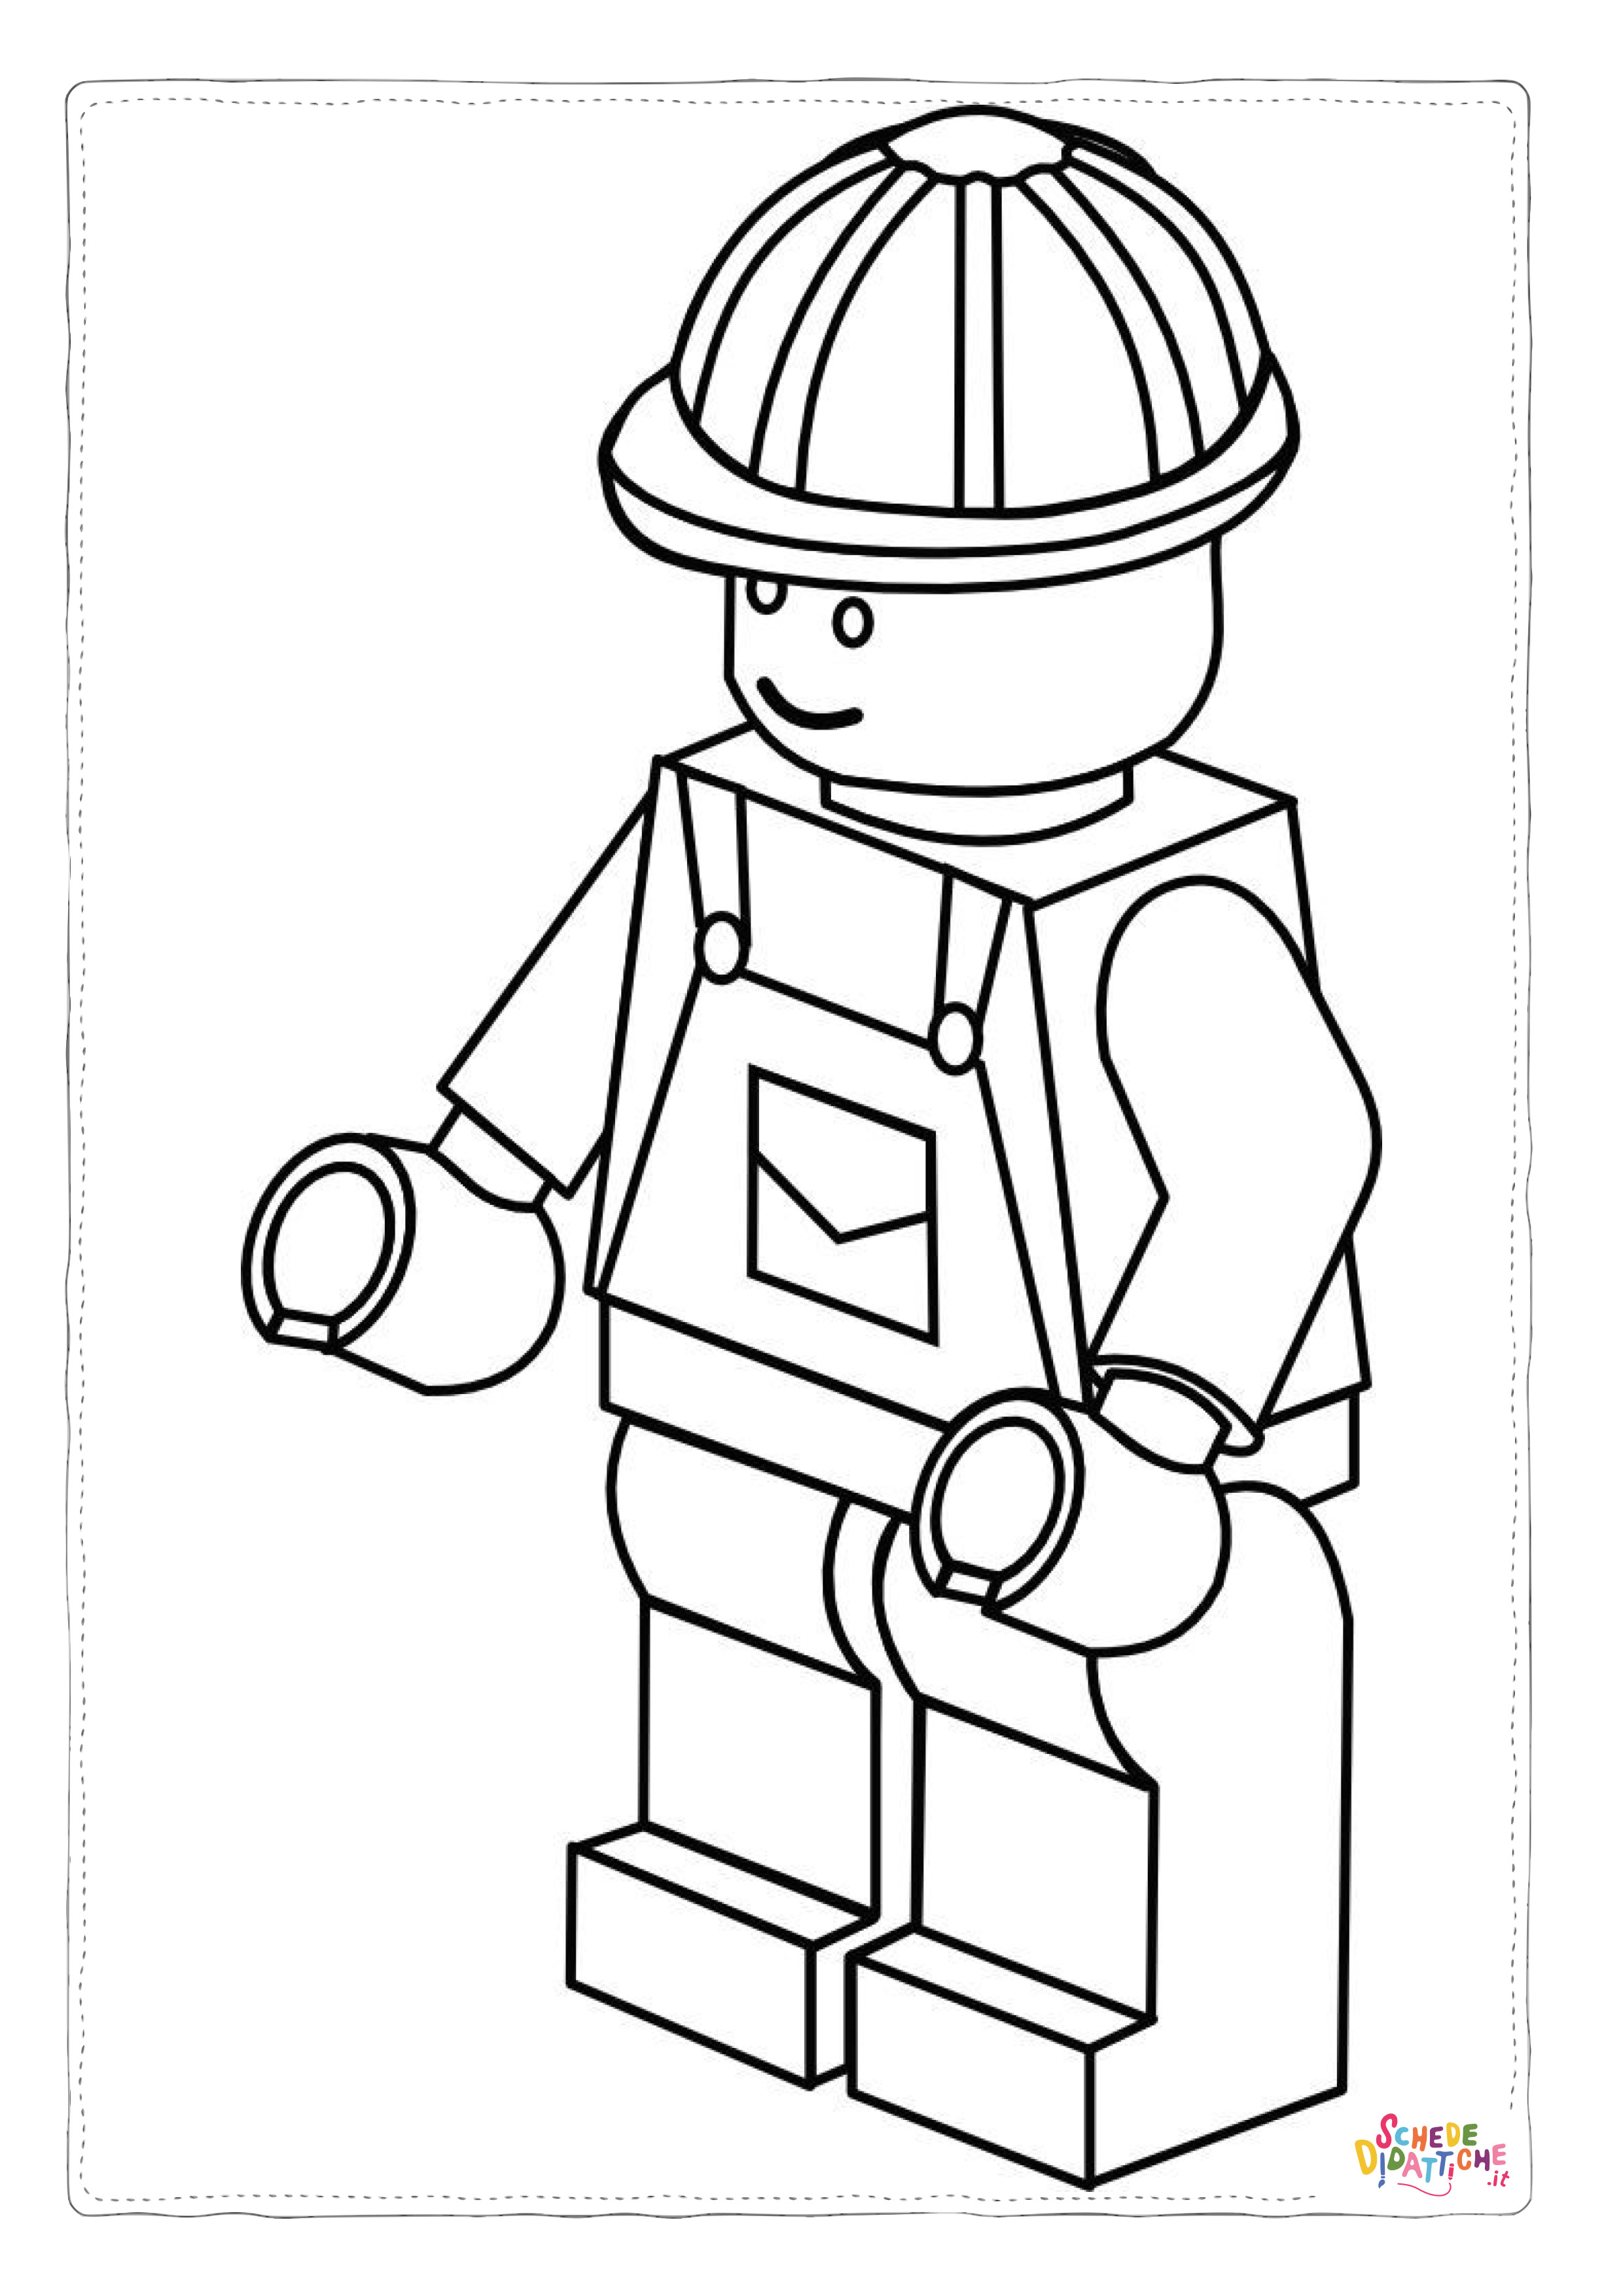 Disegno di LEGO City da stampare e colorare